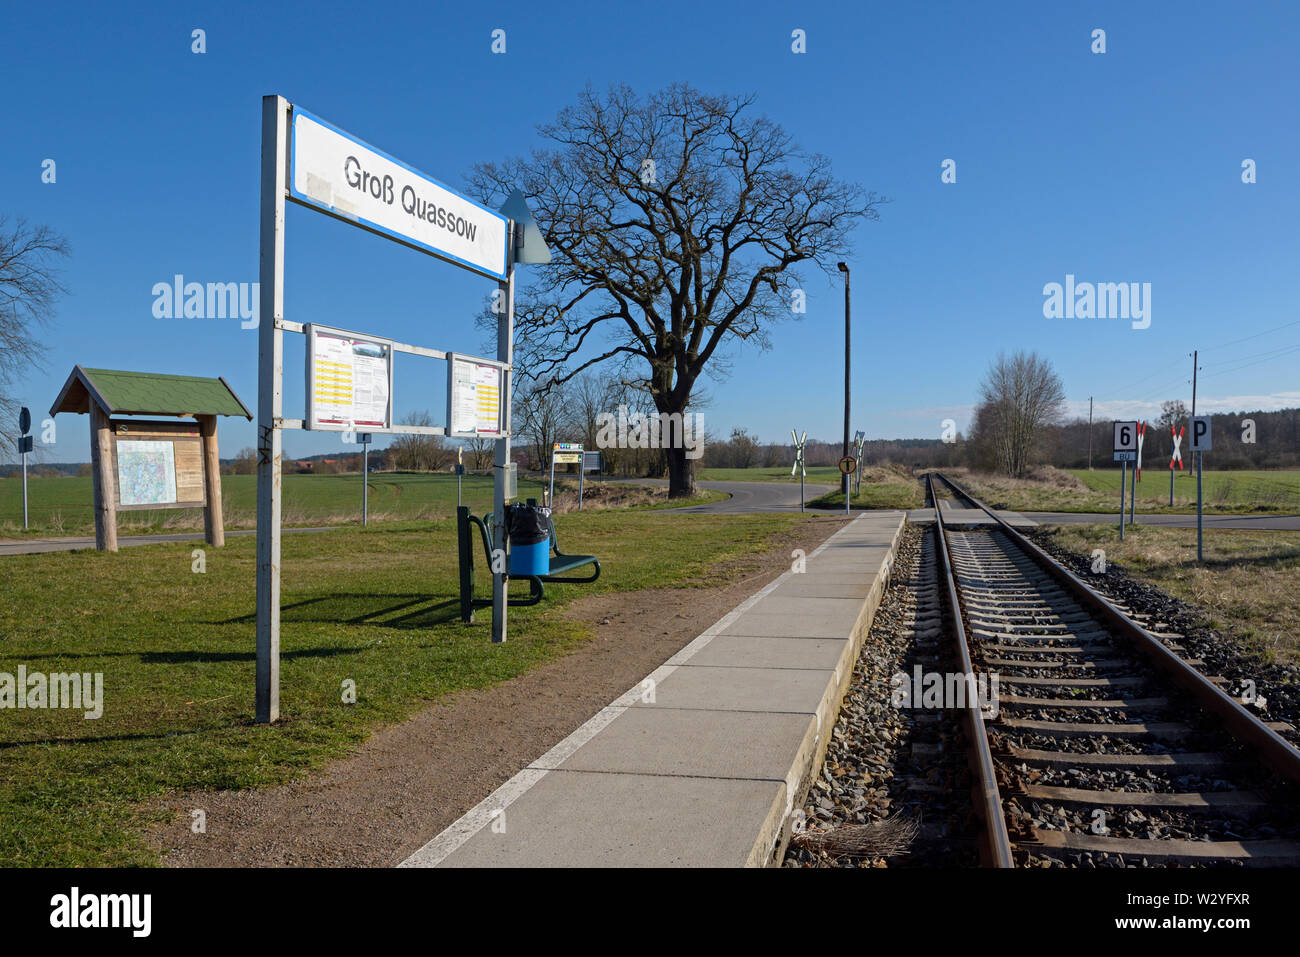 Petite gare, avril, Gross Quassow, Mecklenburg-Vorpommern, Allemagne Banque D'Images